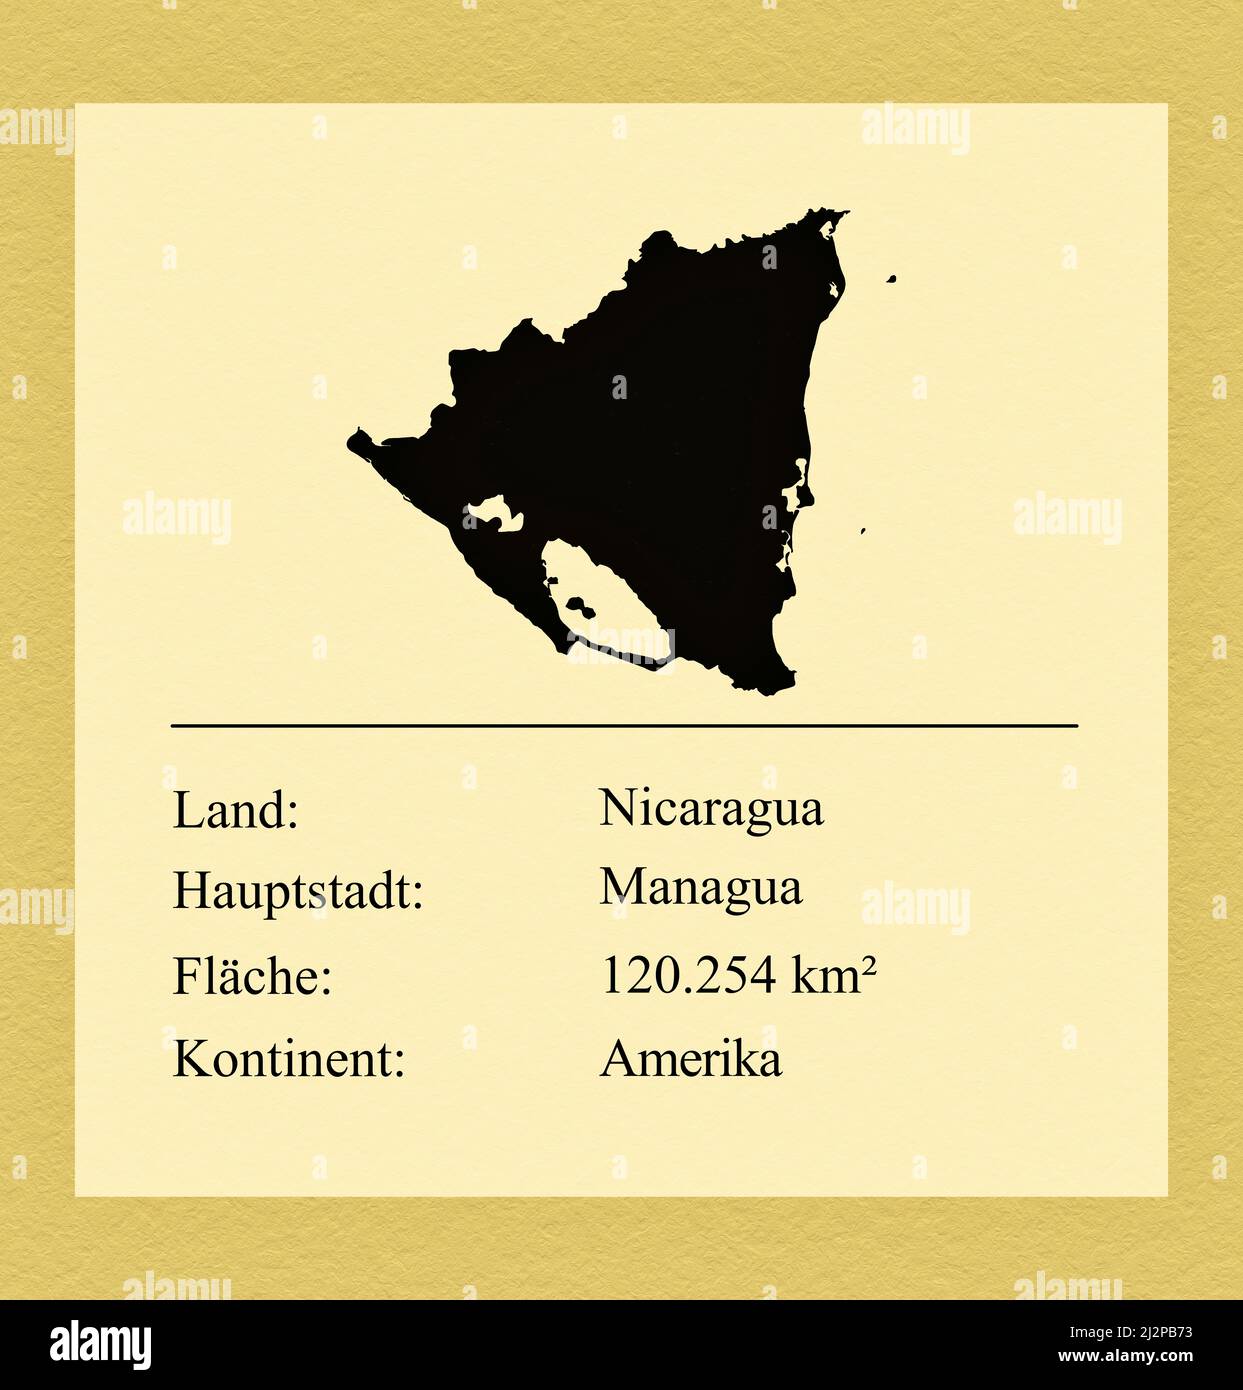 Umrisse des Landes Nicaragua, darunter ein kleiner Steckbrief mit Ländernamen, Hauptstadt, Fläche und Kontinent Foto Stock